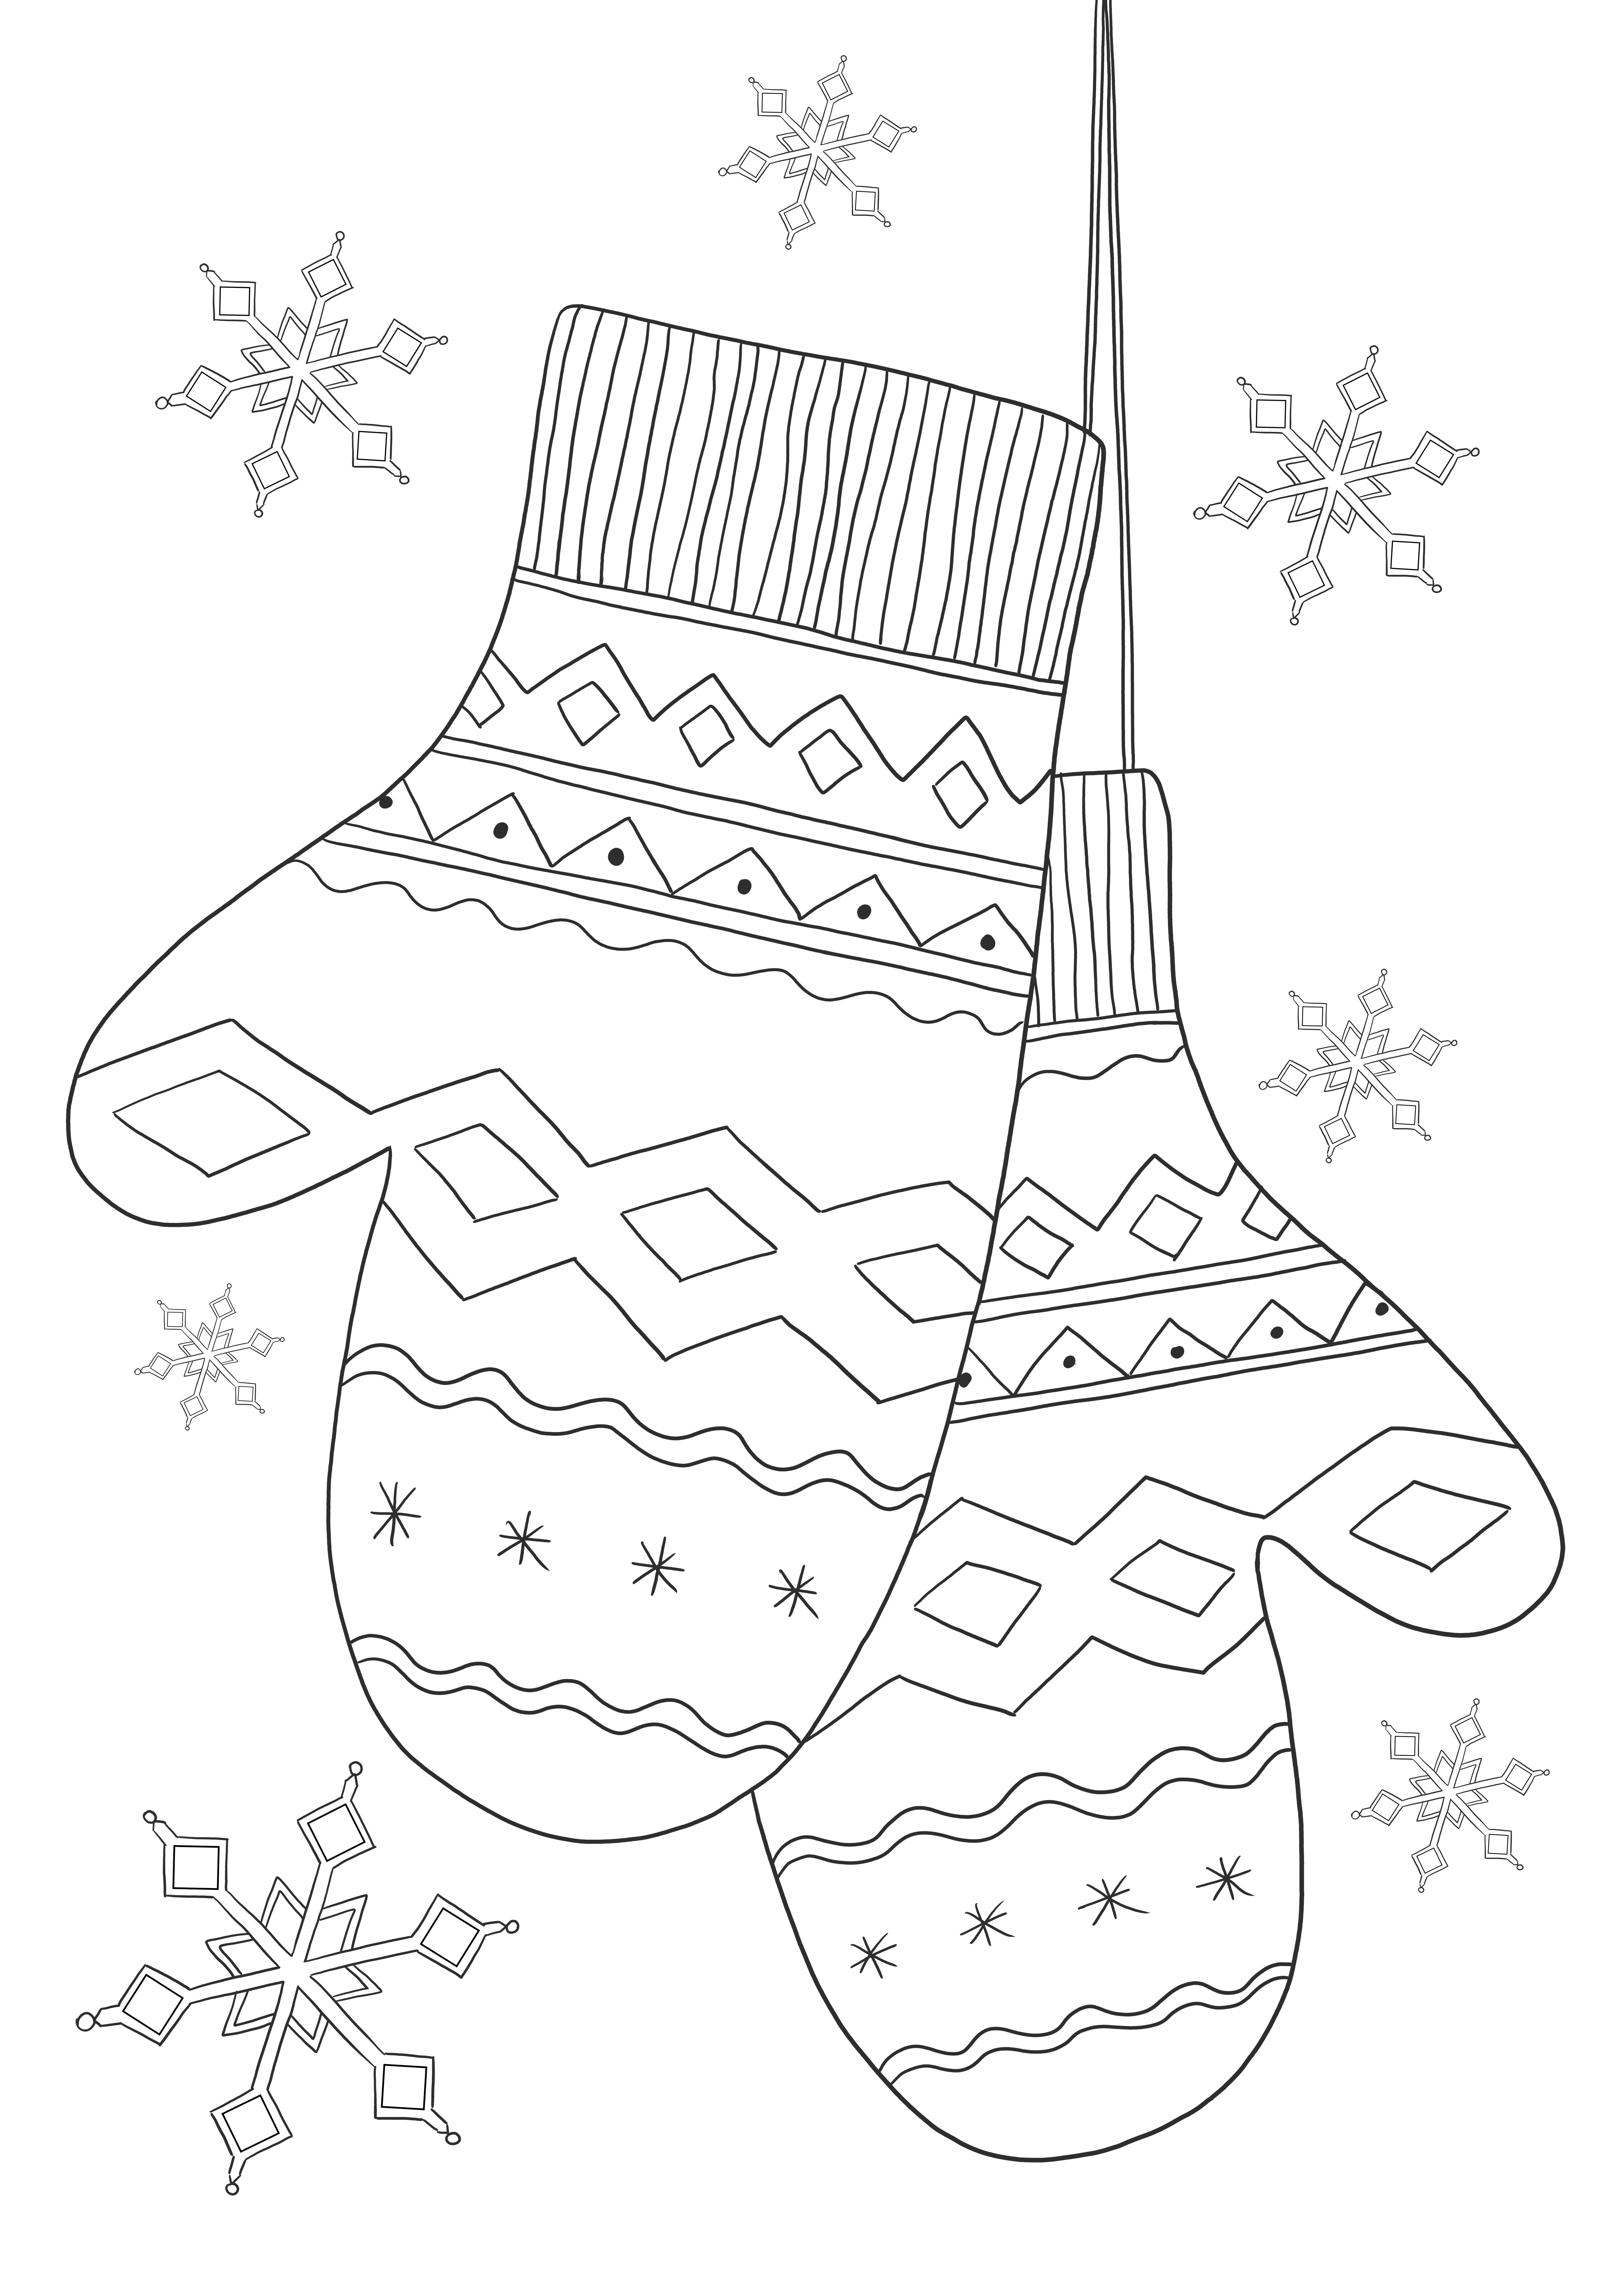 Fișă educațională fără mănuși de iarnă pentru a afla despre hainele de iarnă